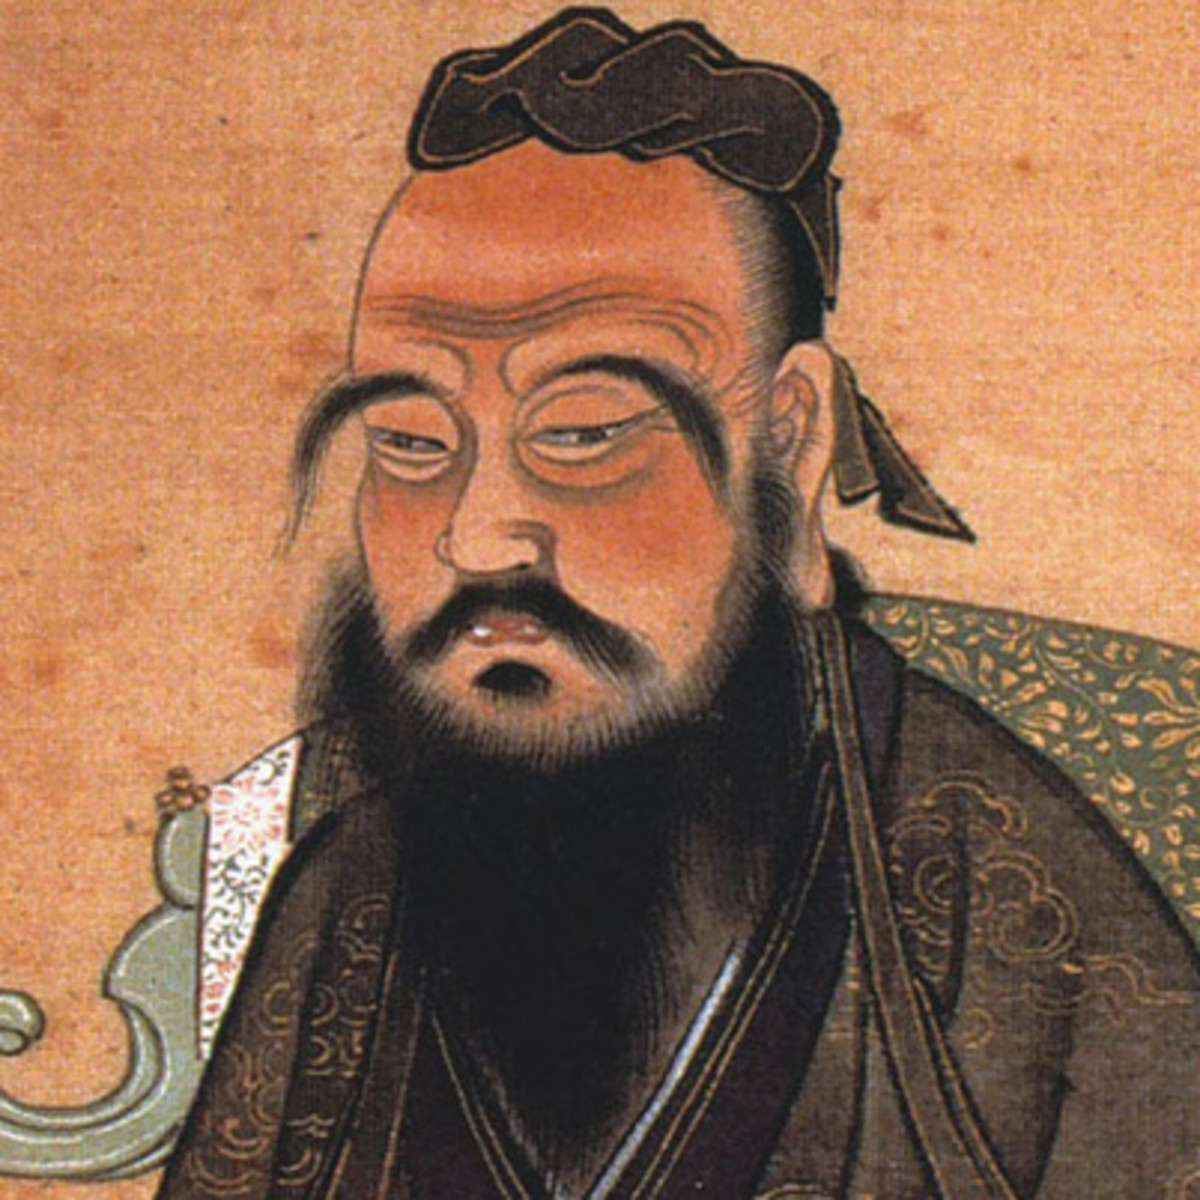 Confucius
www.biography.com/scholar/confucius